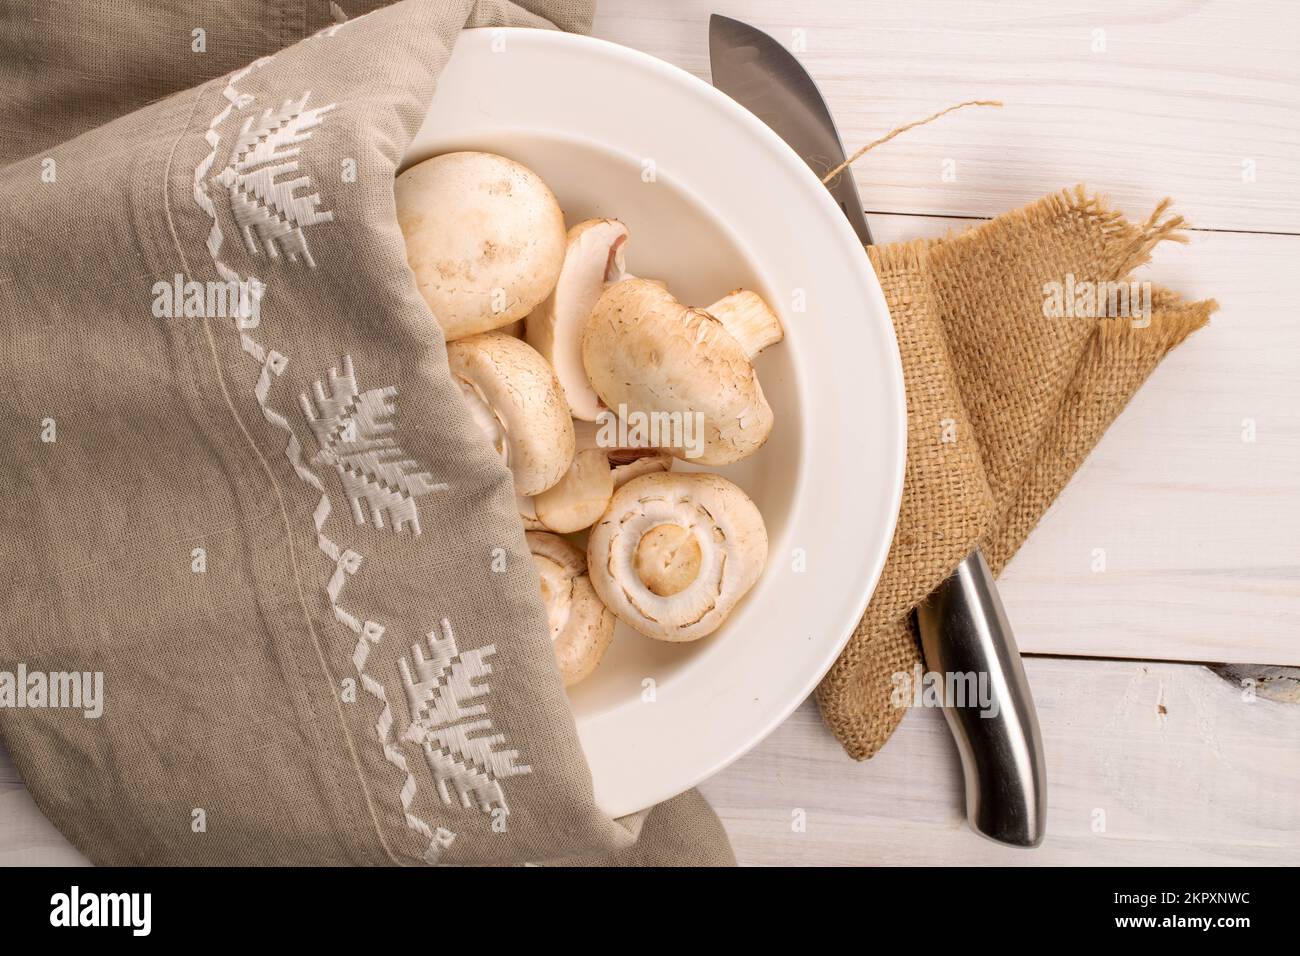 Diversi funghi freschi e biologici champignon appetitosi in un piatto di ceramica bianca, con un coltello di metallo e due tovaglioli di lino e iuta, su un tavolo. Foto Stock